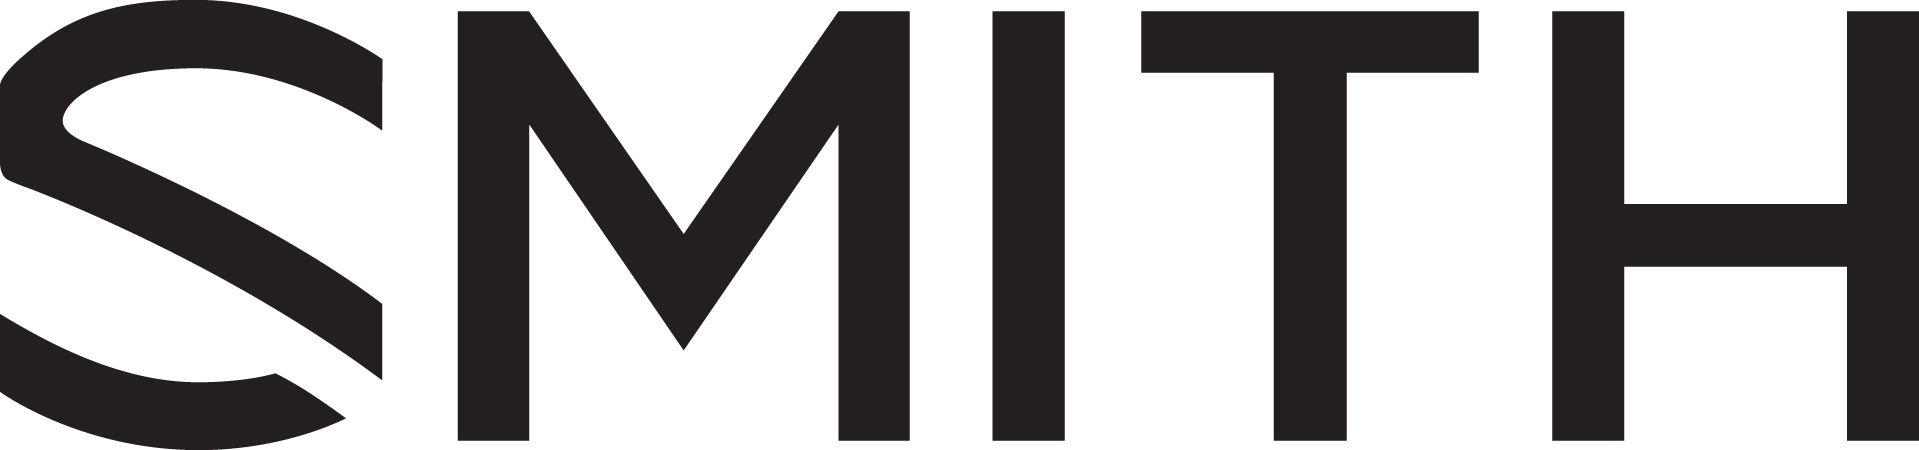 image smith logo